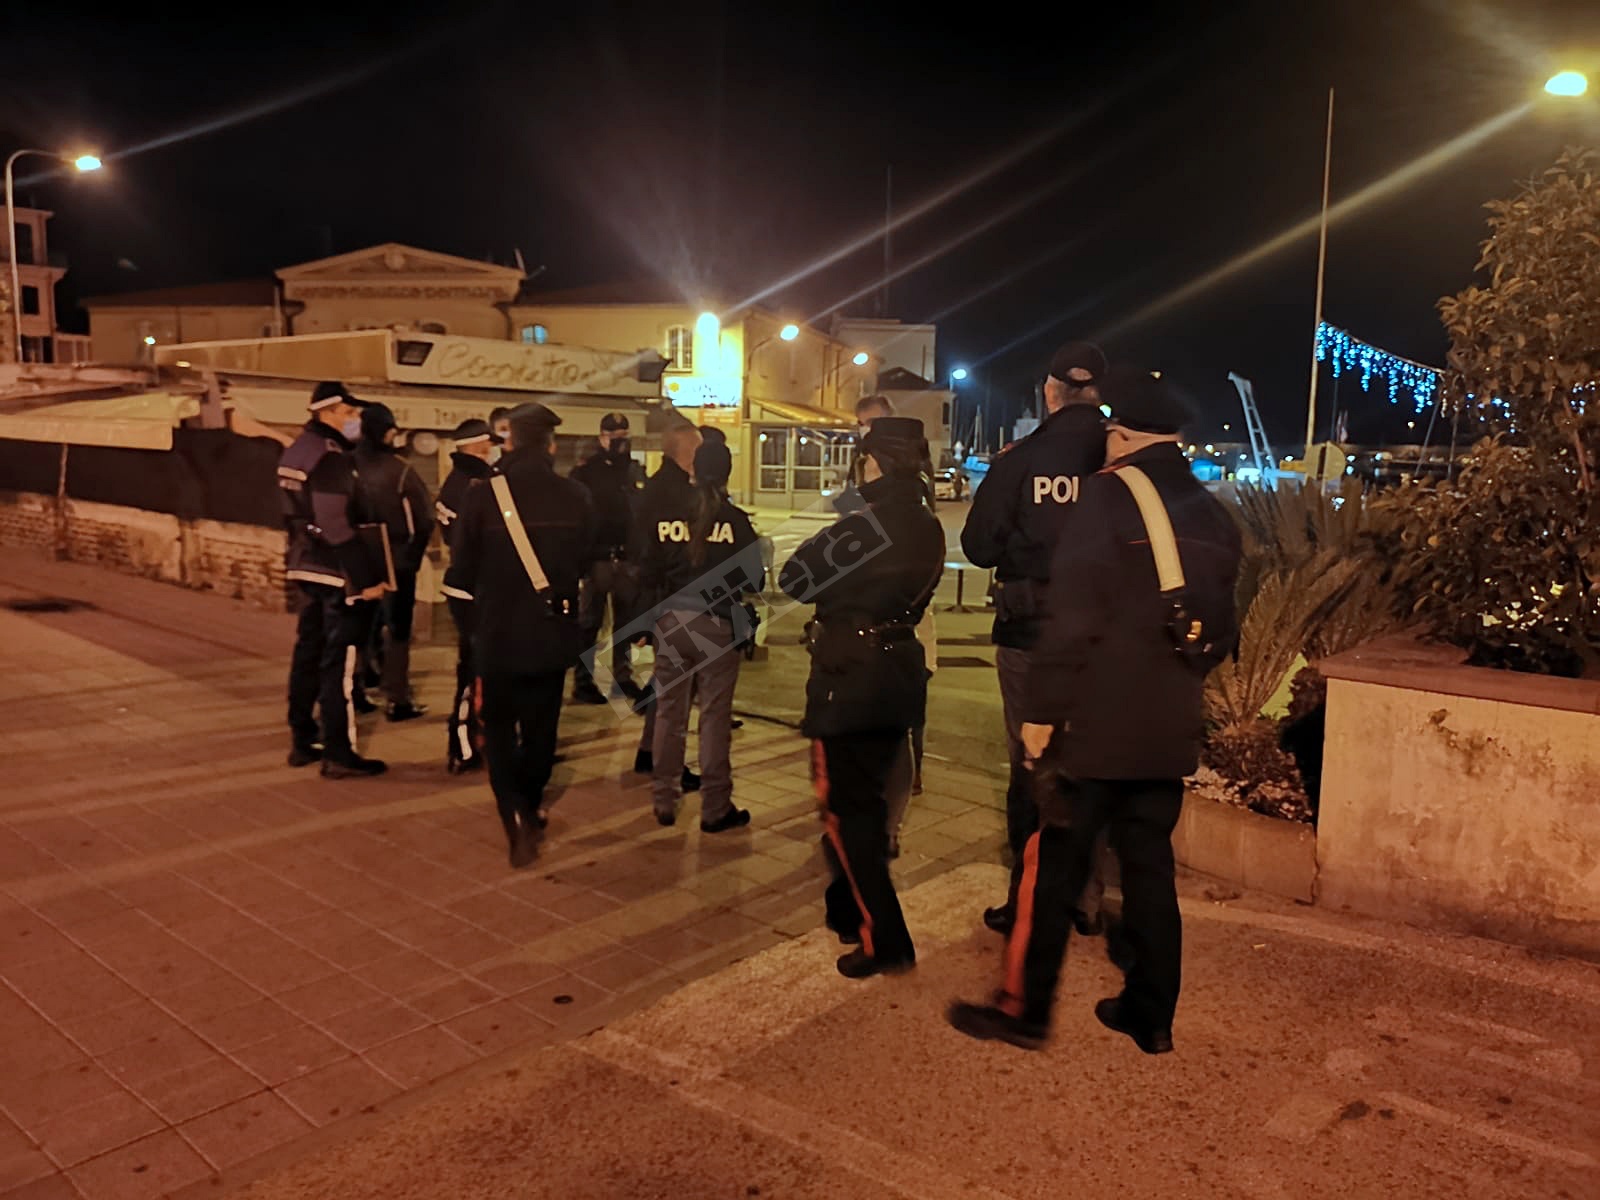 Ioapro Sanremo controlli foze dell'ordine notturna carabinieri polizia municipale polizia_03